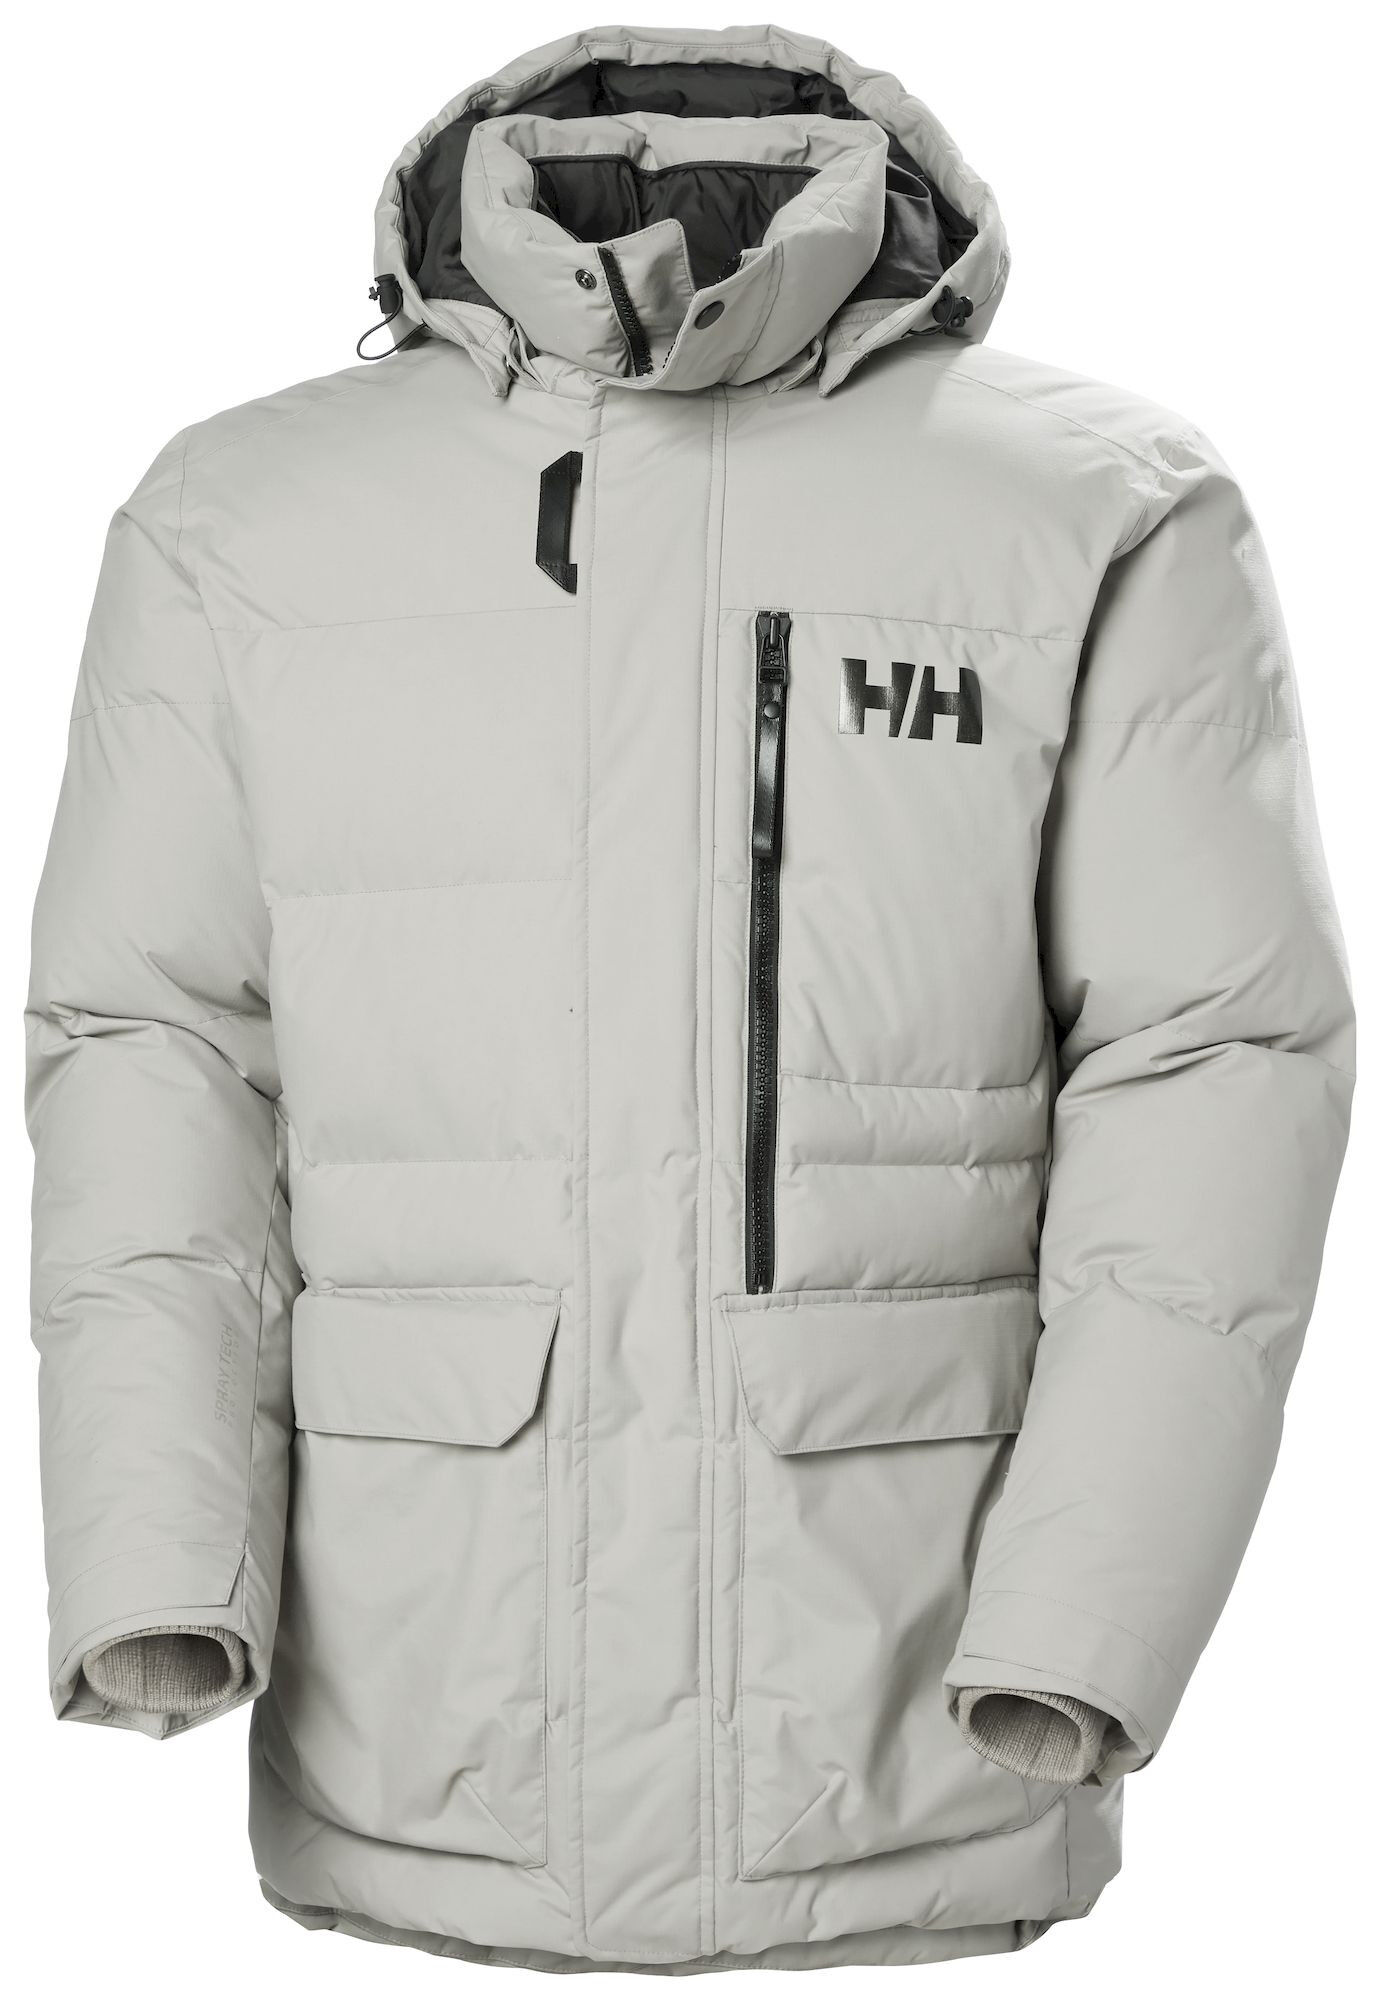 Helly Hansen Tromsoe Jacket - Synthetic Jacket - Men's